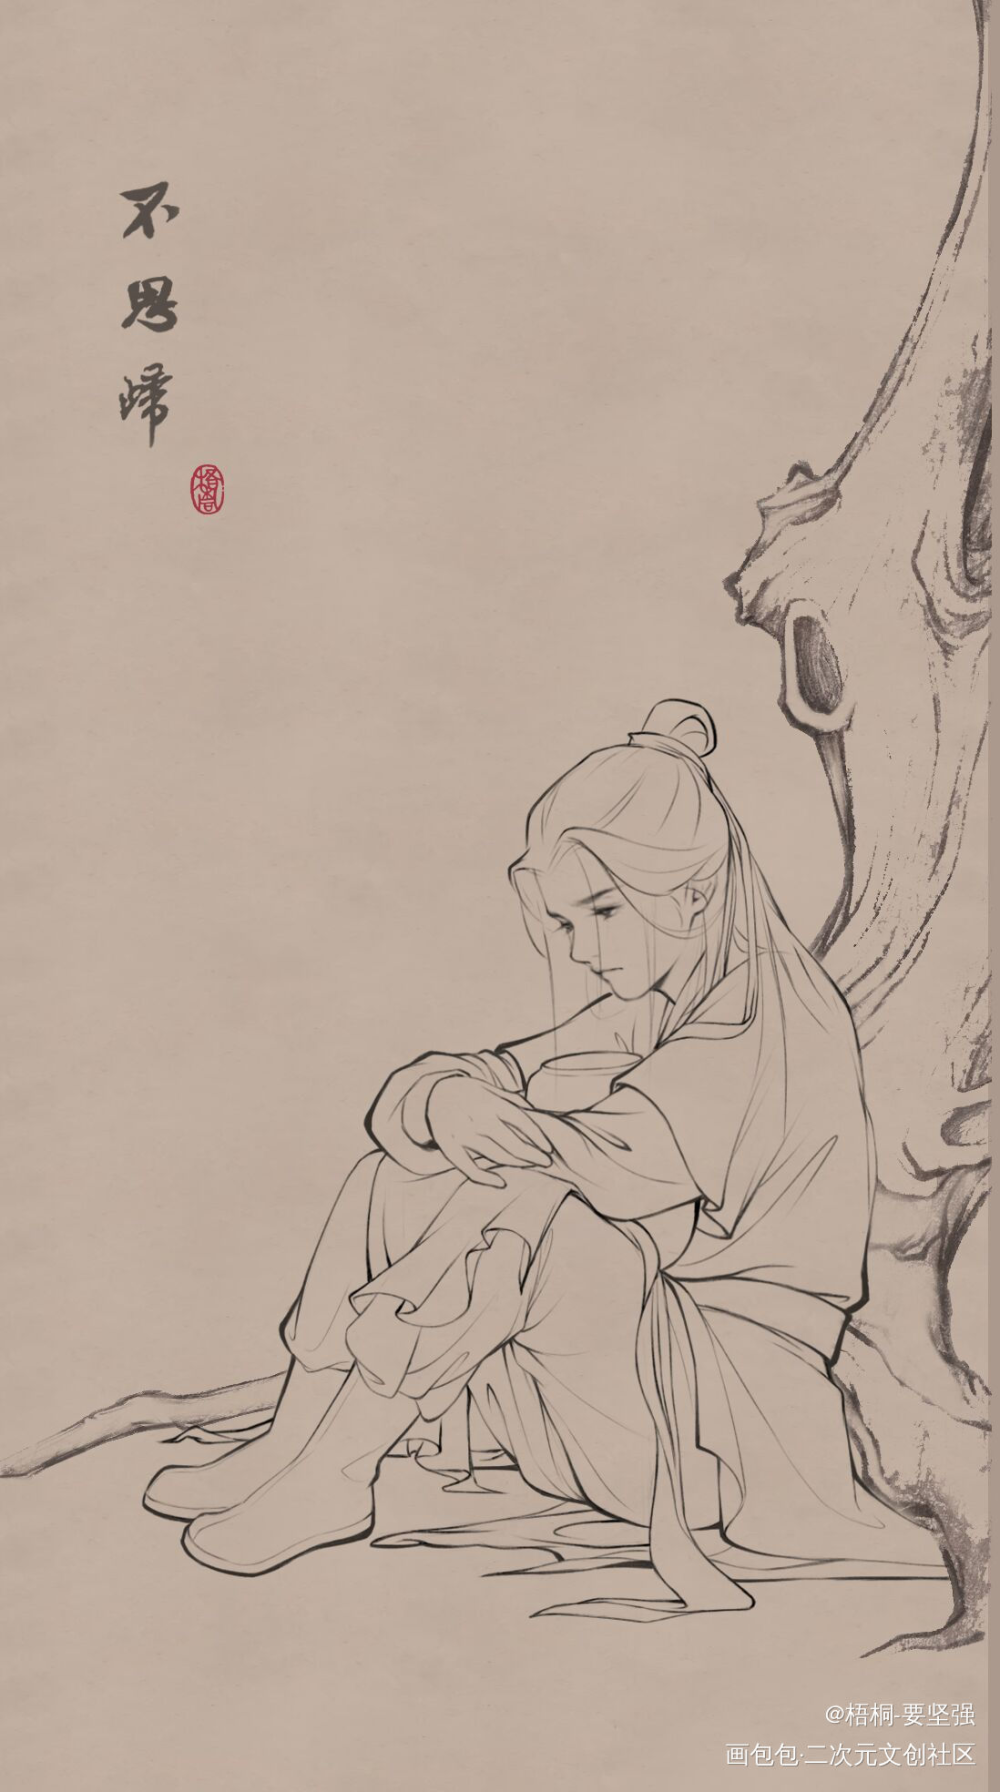 【不思归】_二哈和他的白猫师尊夏司逆楚晚宁绘画作品